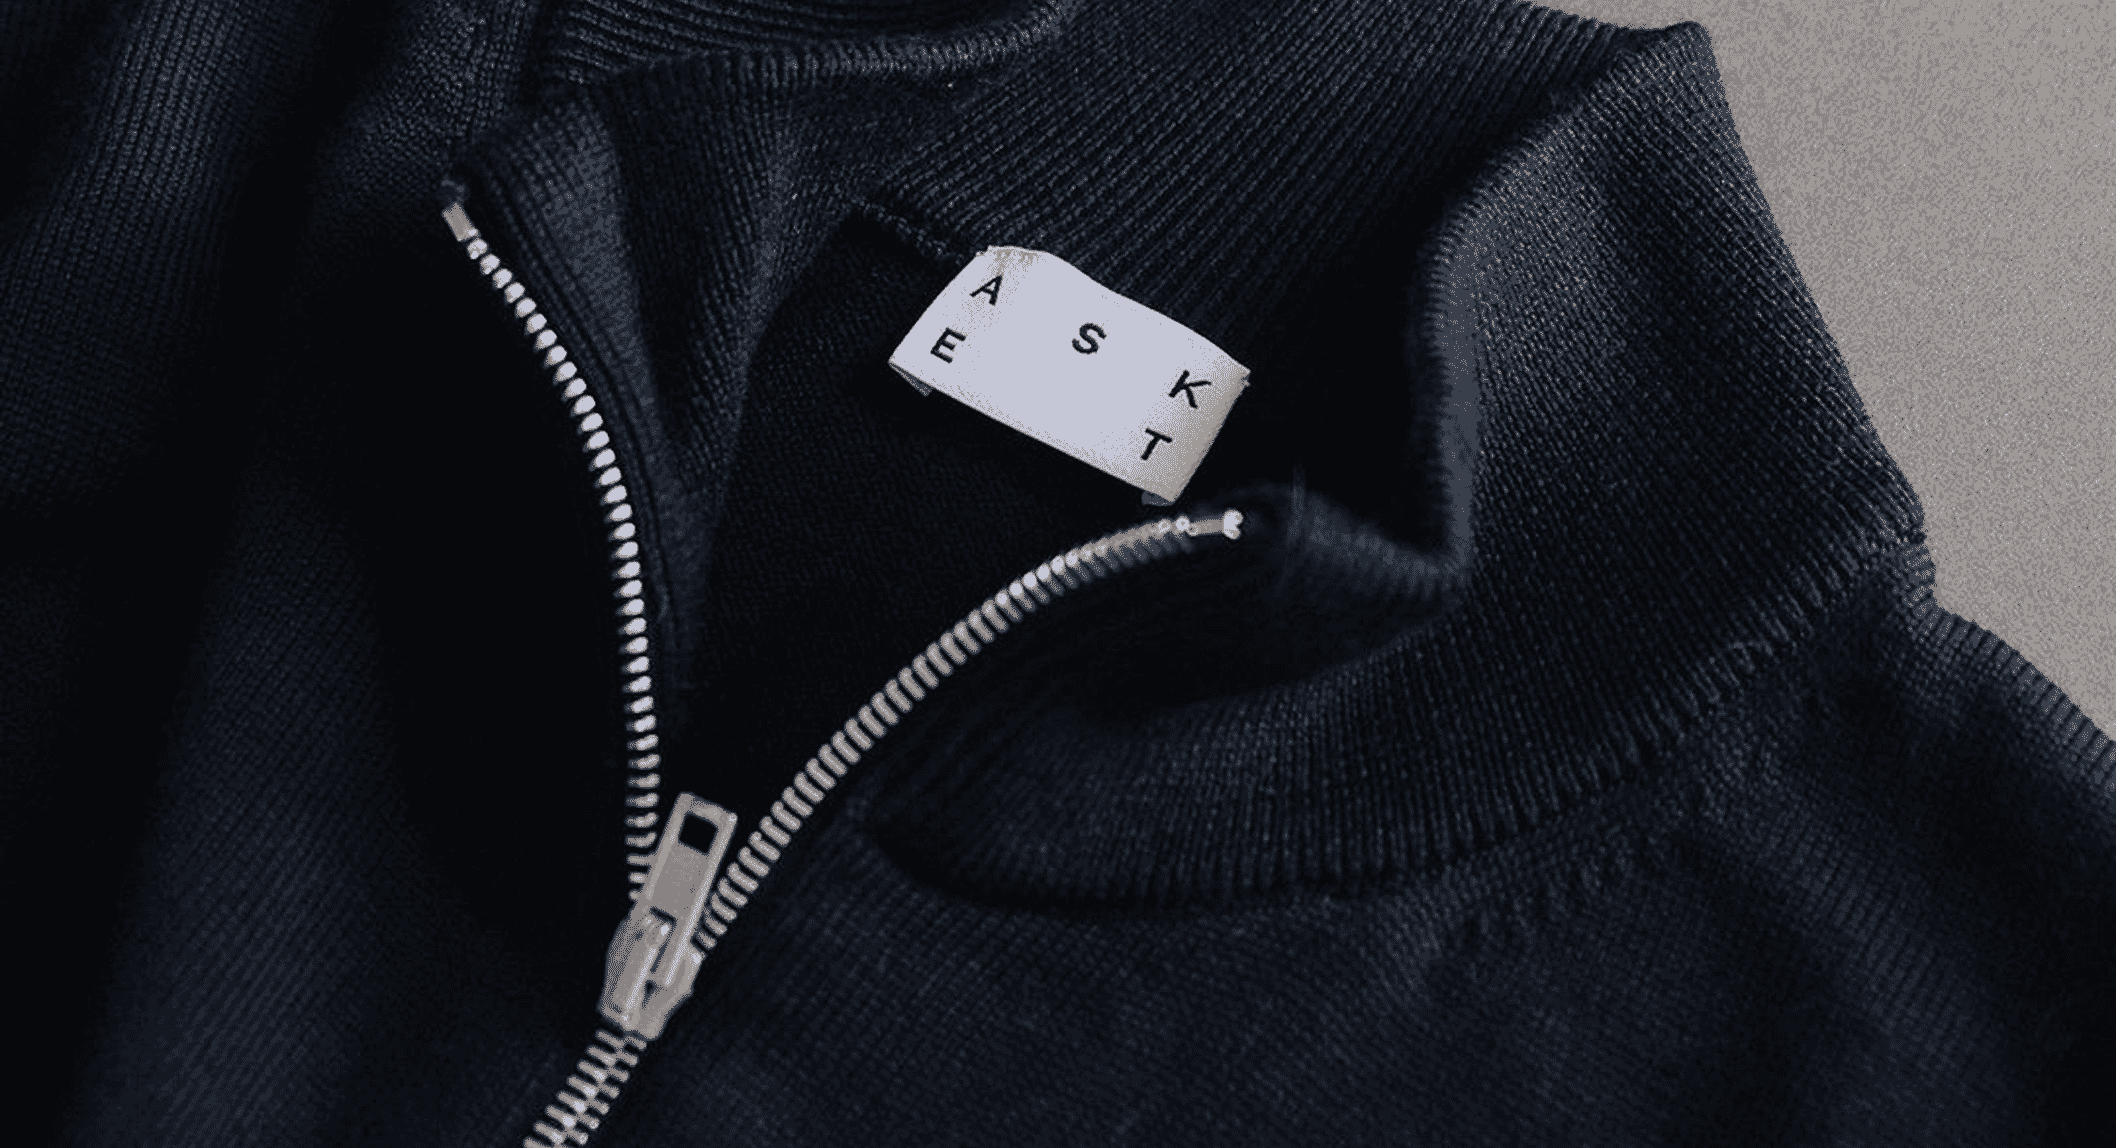 Essentials Men's 100% Cotton Quarter-Zip Sweater